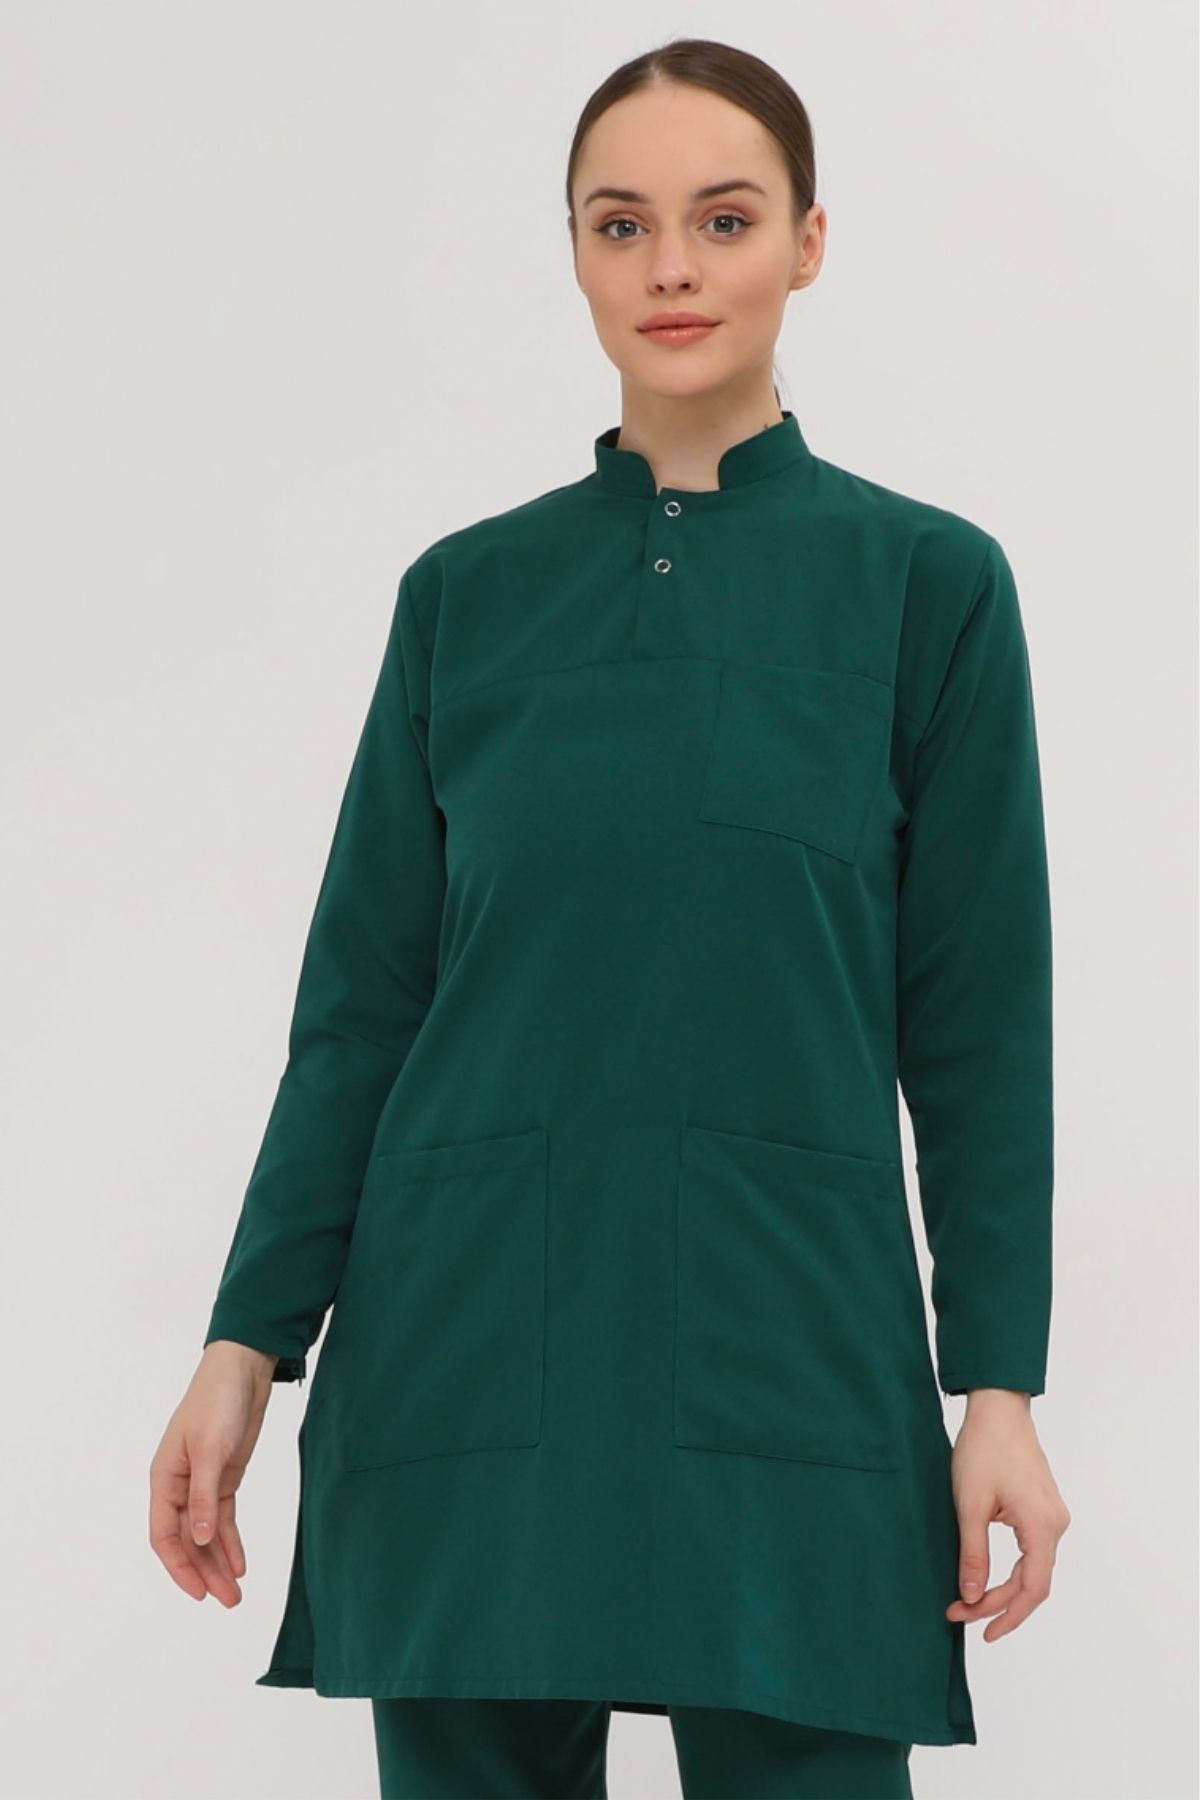 Medinila Thin Flex 2 Çıt Çıtlı Tesettür Zümrüt Yeşili Likralı Terikoton Tek Üst - Kadın Hemşire Forması